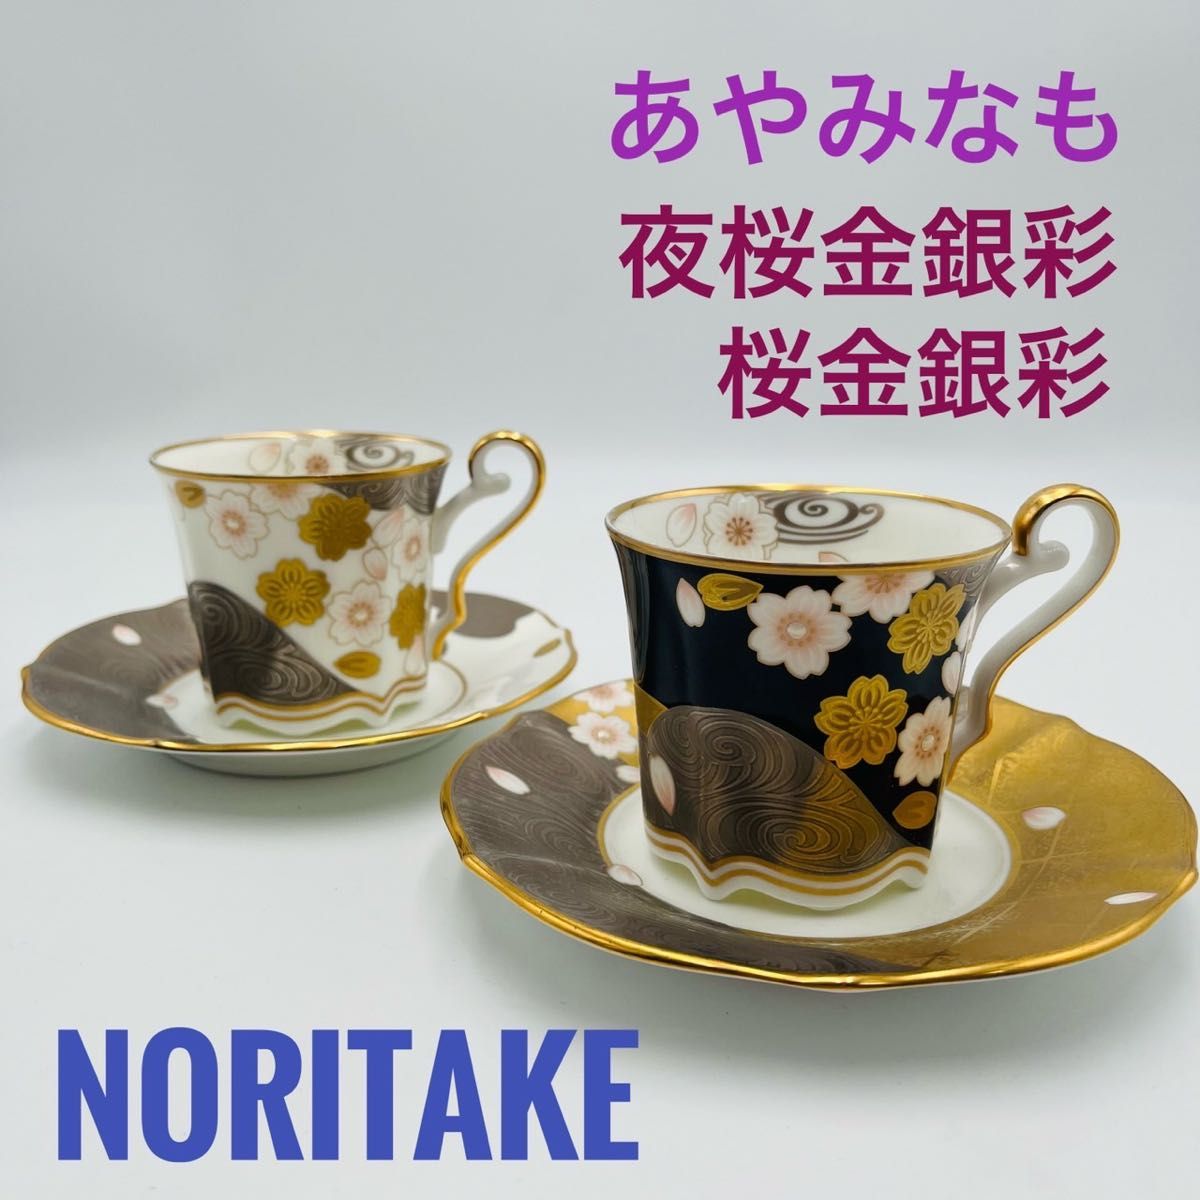 【良品】ノリタケ あやみなも カップ&ソーサー 夜桜金銀彩 ペアカップ